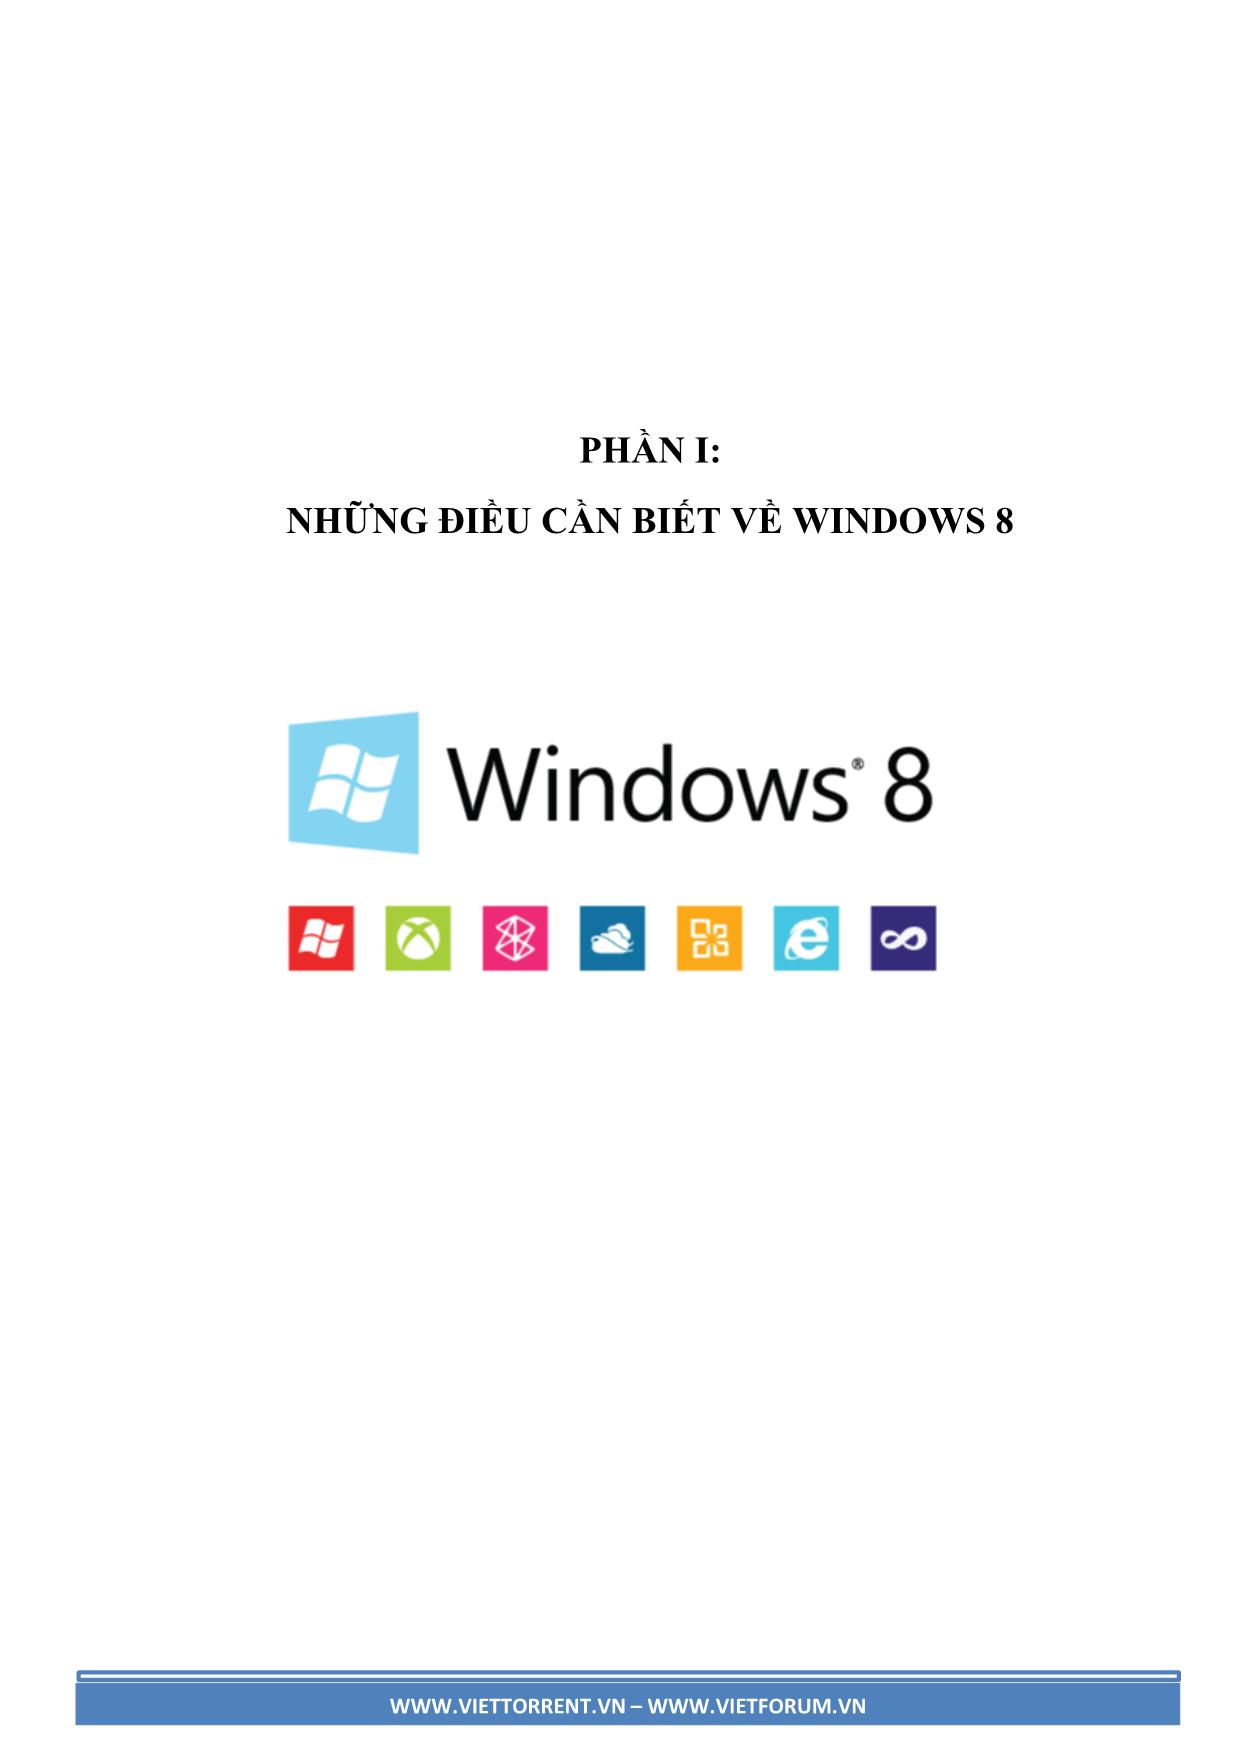 Hệ điều hành Windows 8 kiến thức cơ bản và hướng dẫn sử dụng Windows 8 toàn tập trang 5